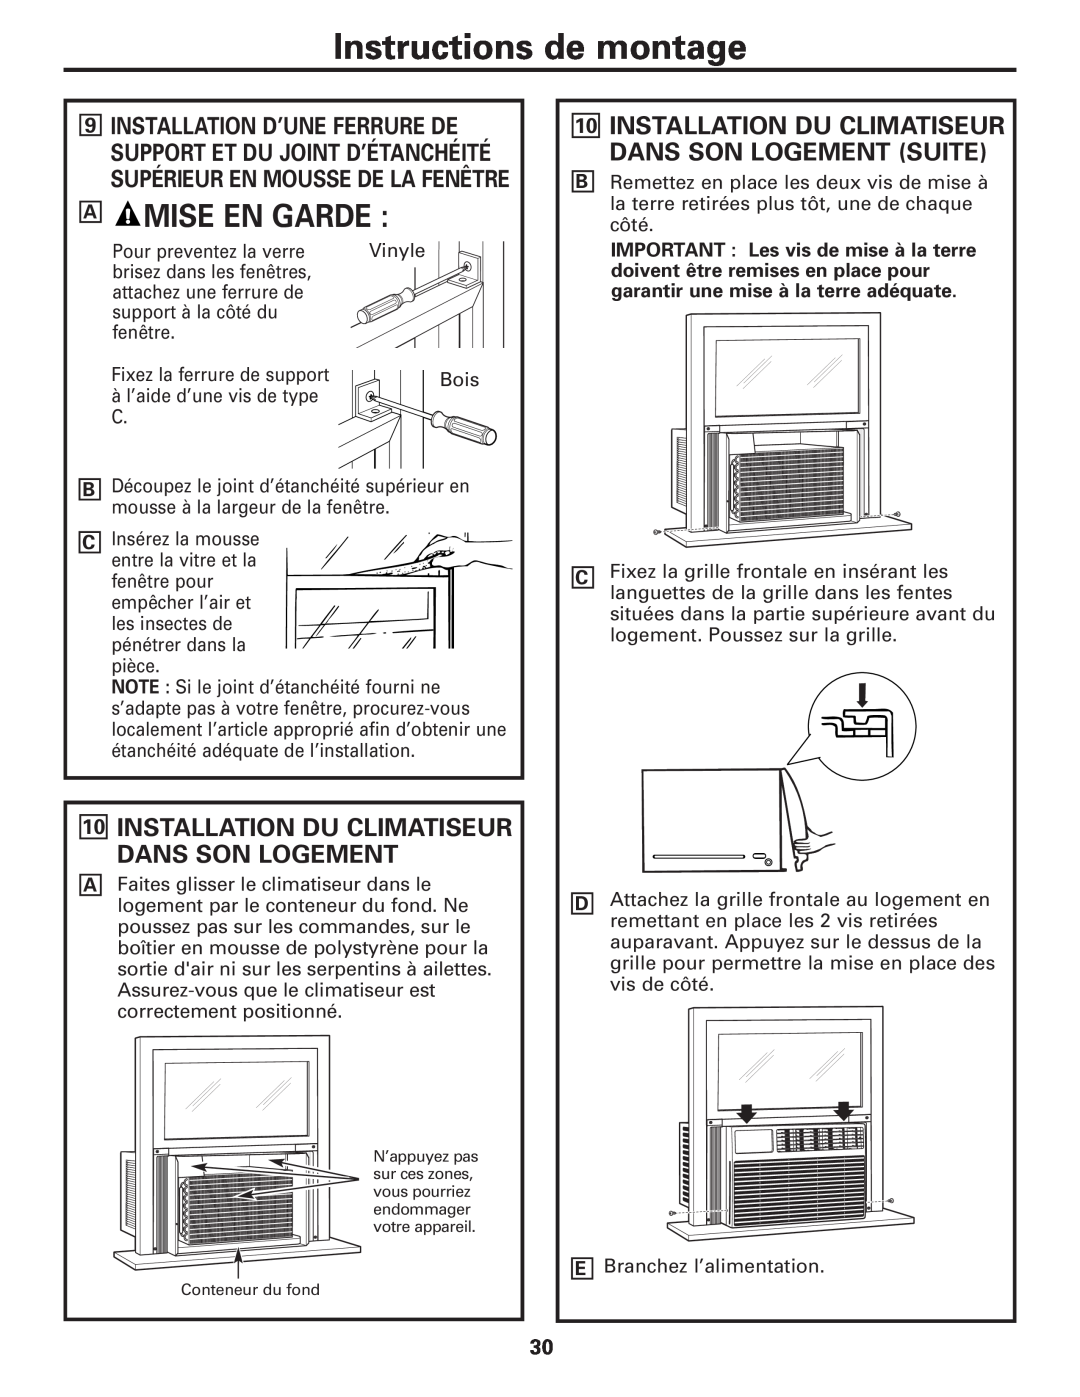 GE AEM10 owner manual A Mise En Garde, Installation Du Climatiseur Dans Son Logement, Instructions de montage 